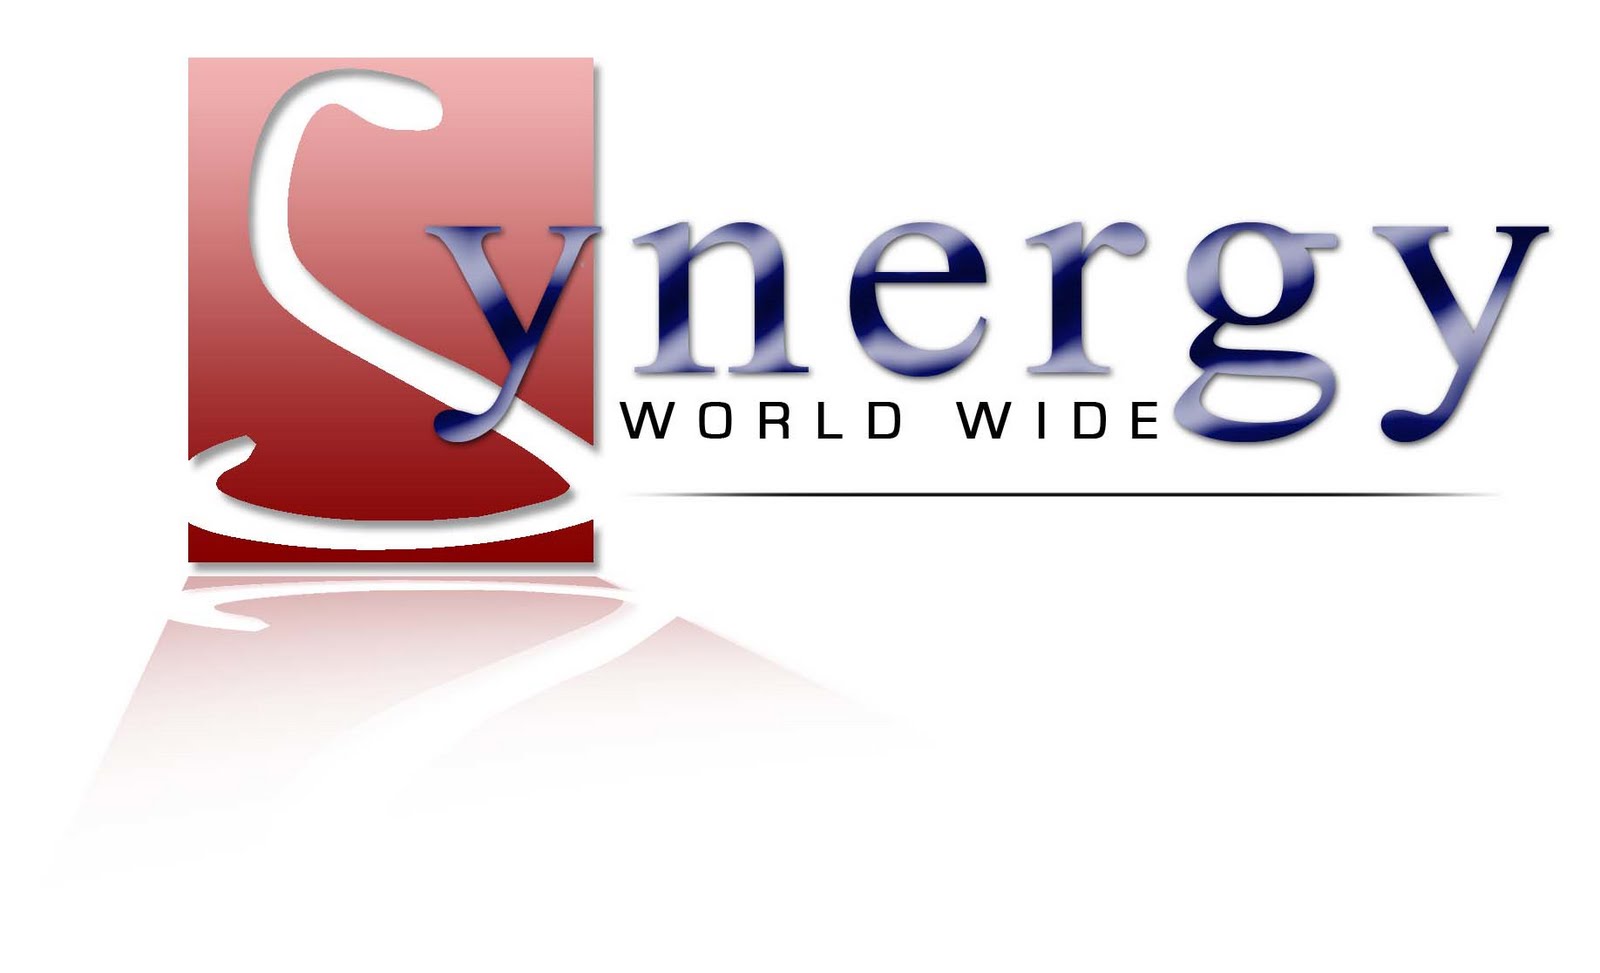 Synergy Worldwide โอกาสธุรกิจเพื่อคุณ